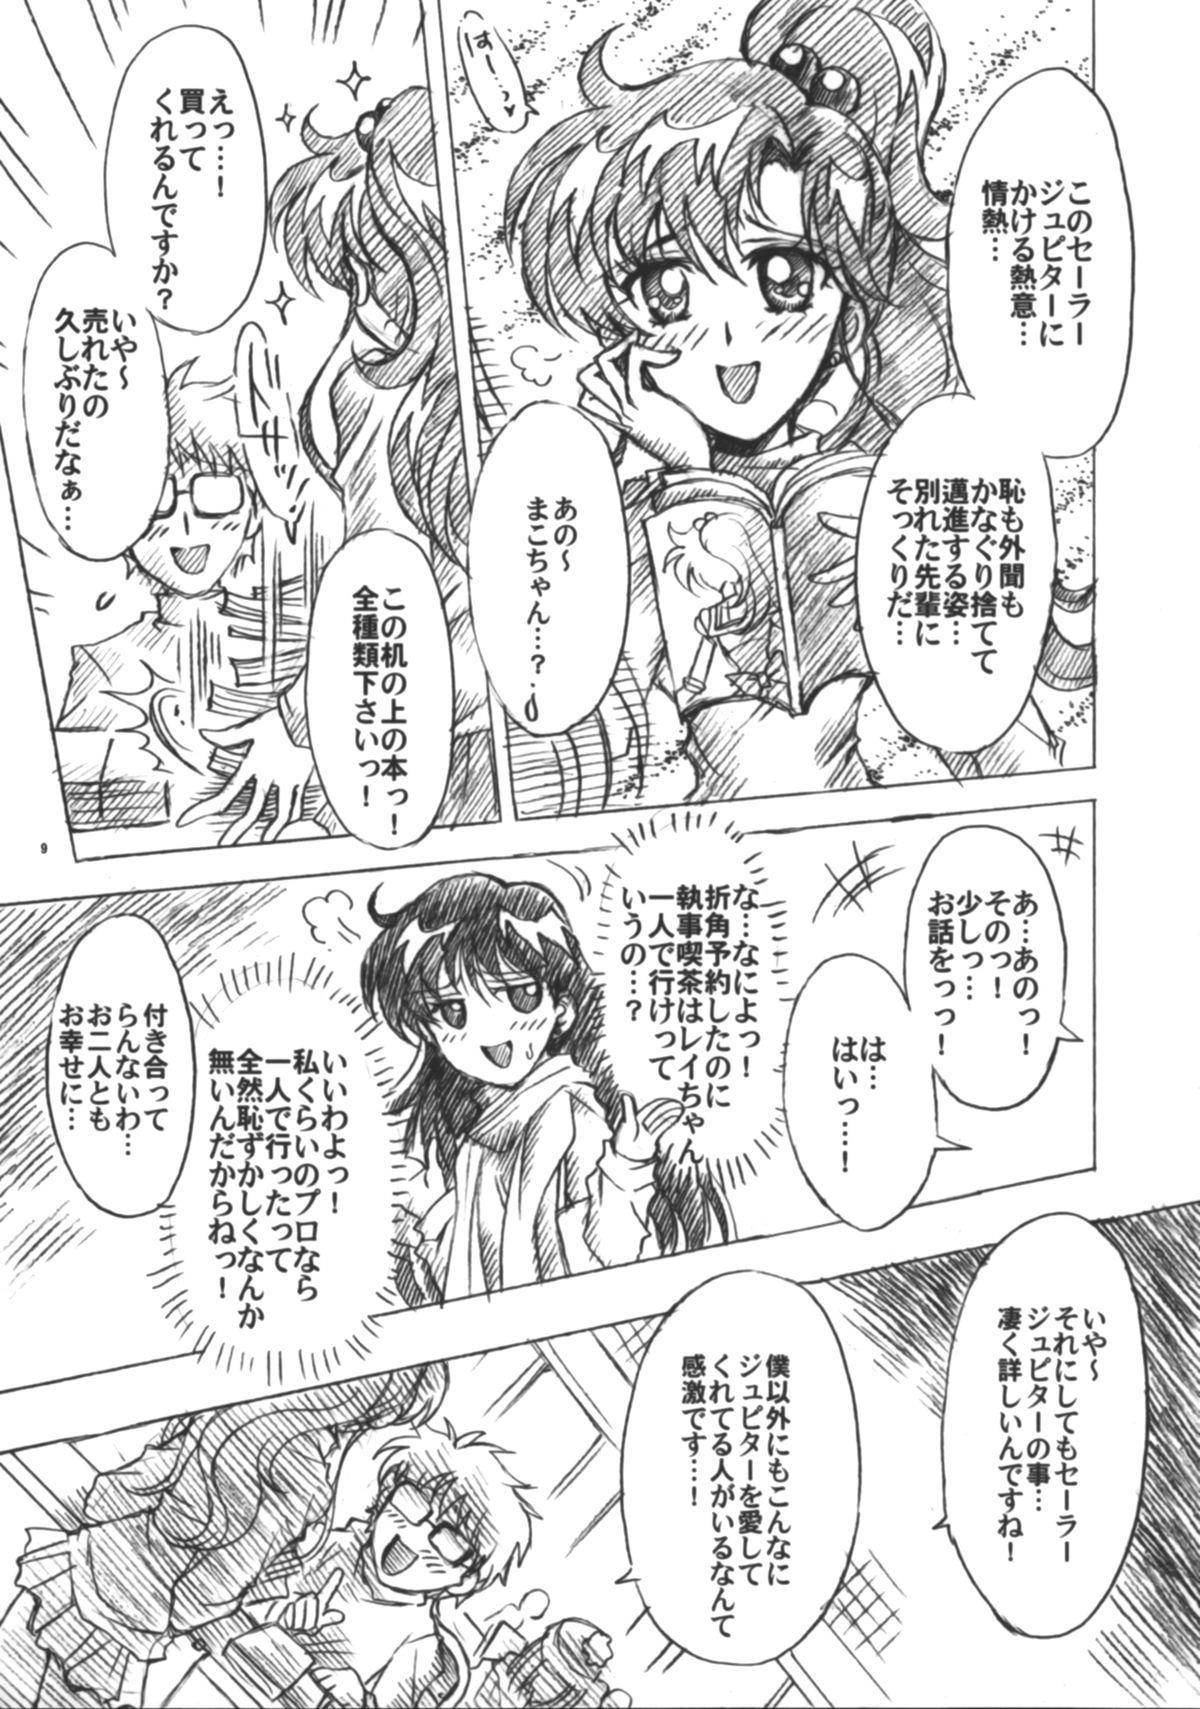 Pinay Boku no Kanojo wa Sailor Senshi 6 - Sailor moon Scandal - Page 10